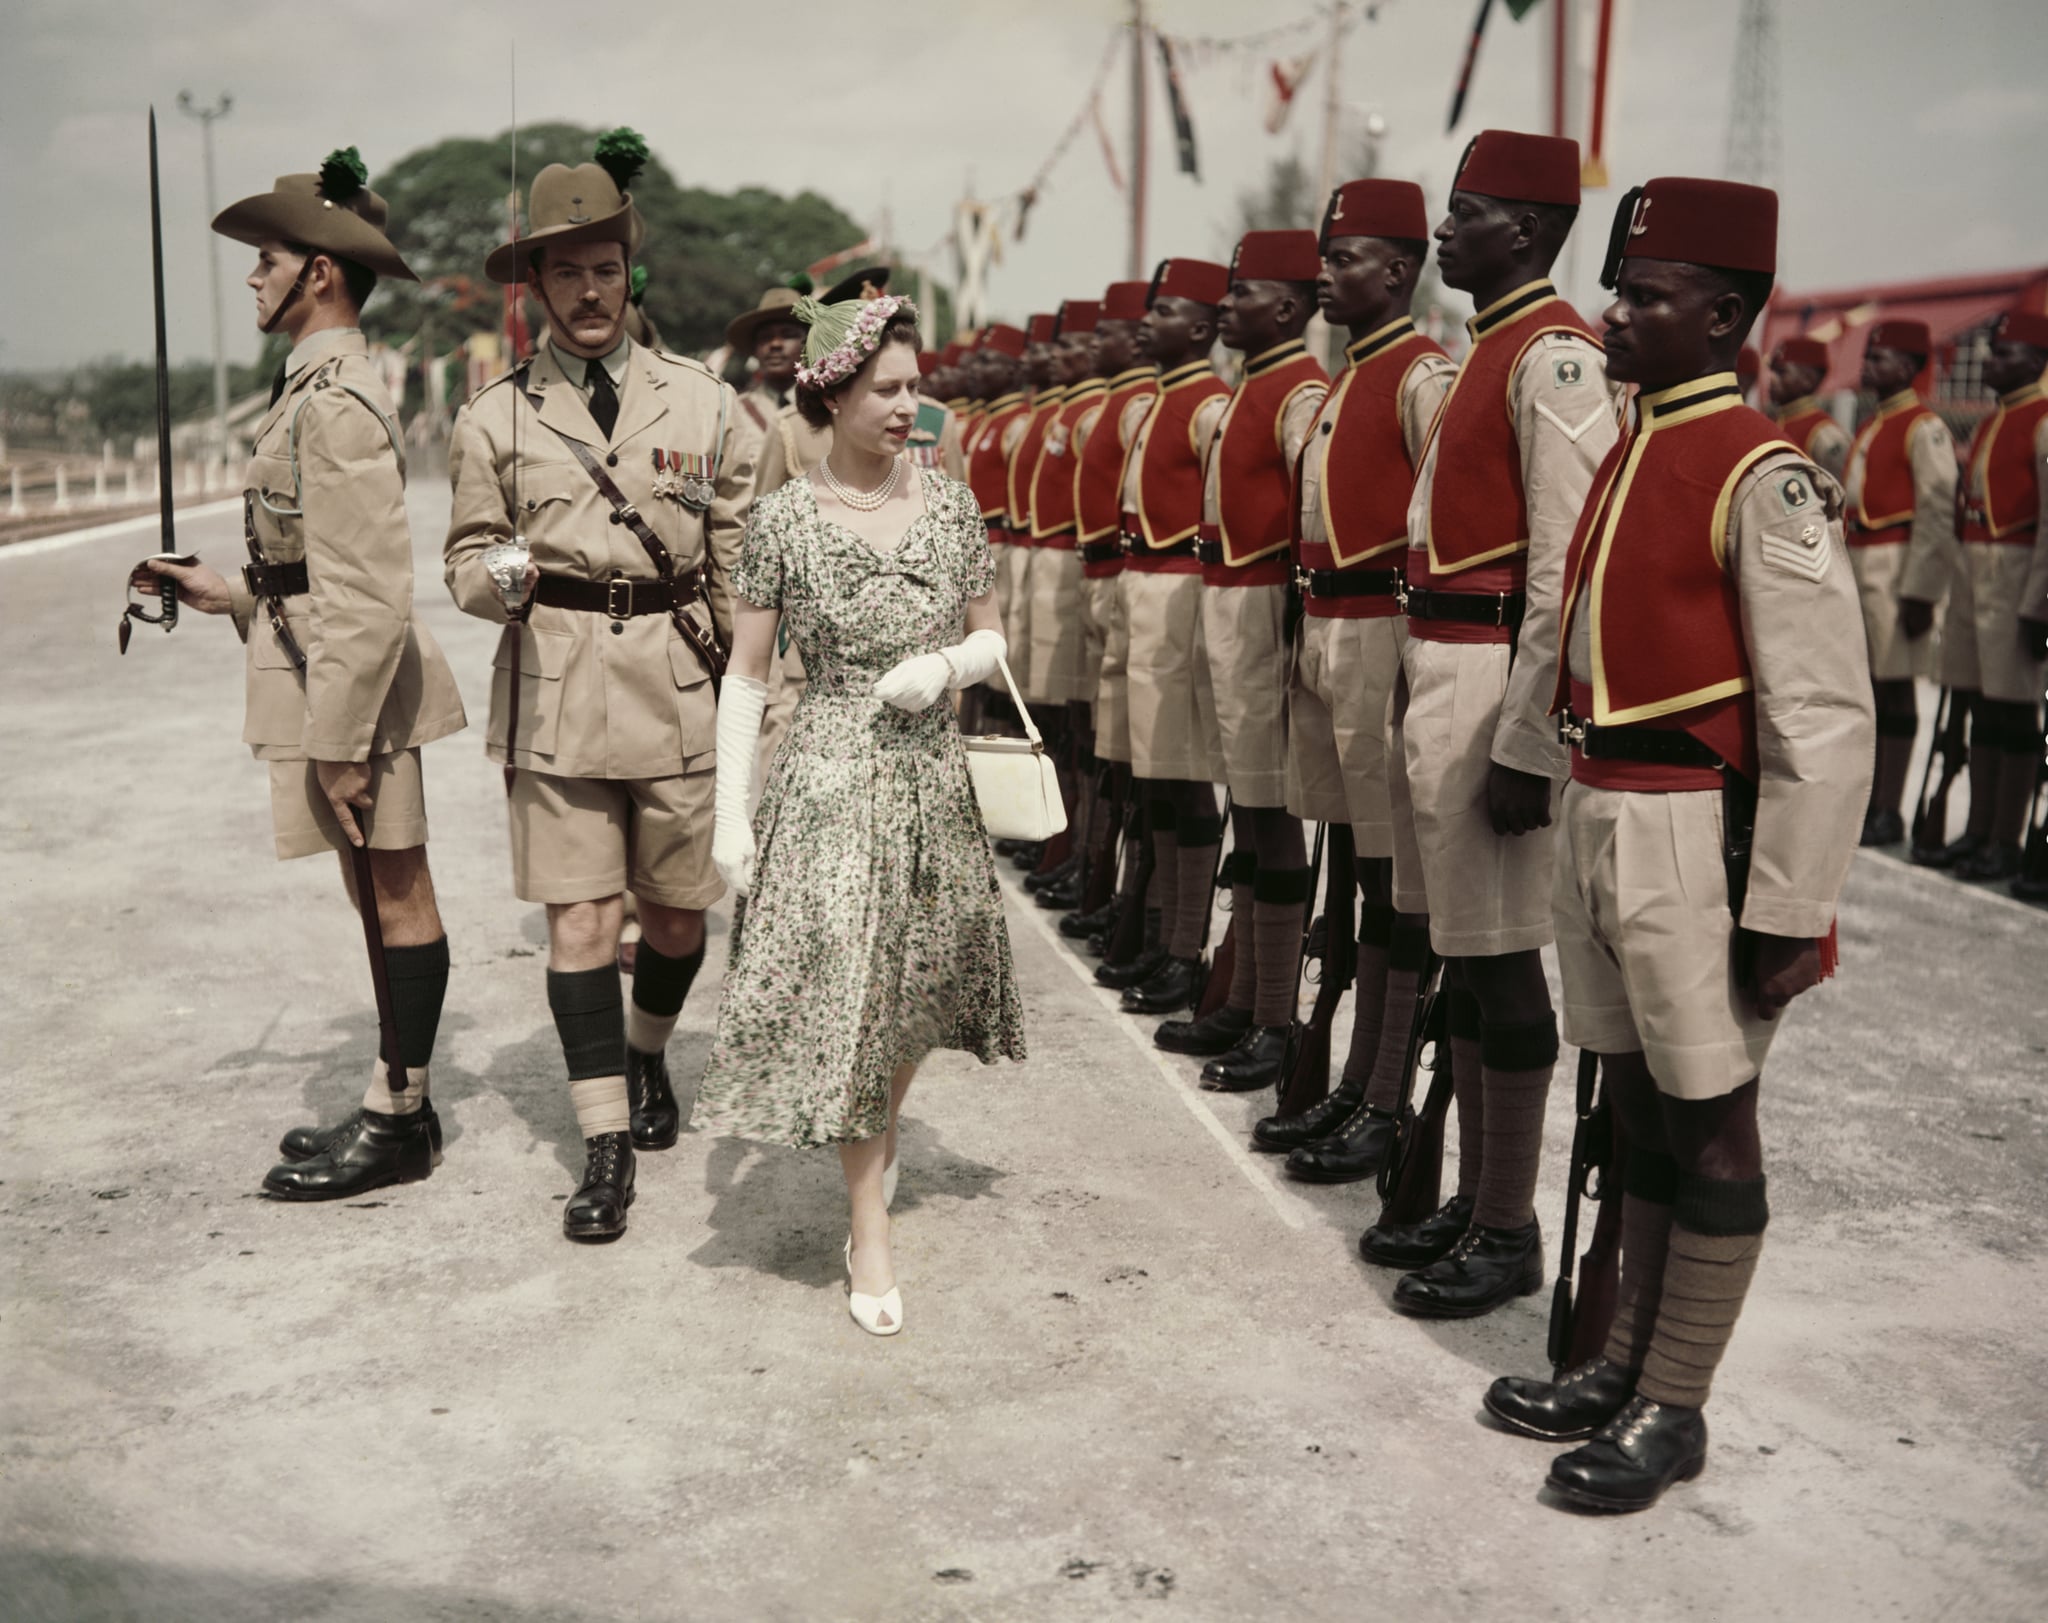 Queen Elizabeth II inspects the Queen's Own Nigeria Regiment in 1956